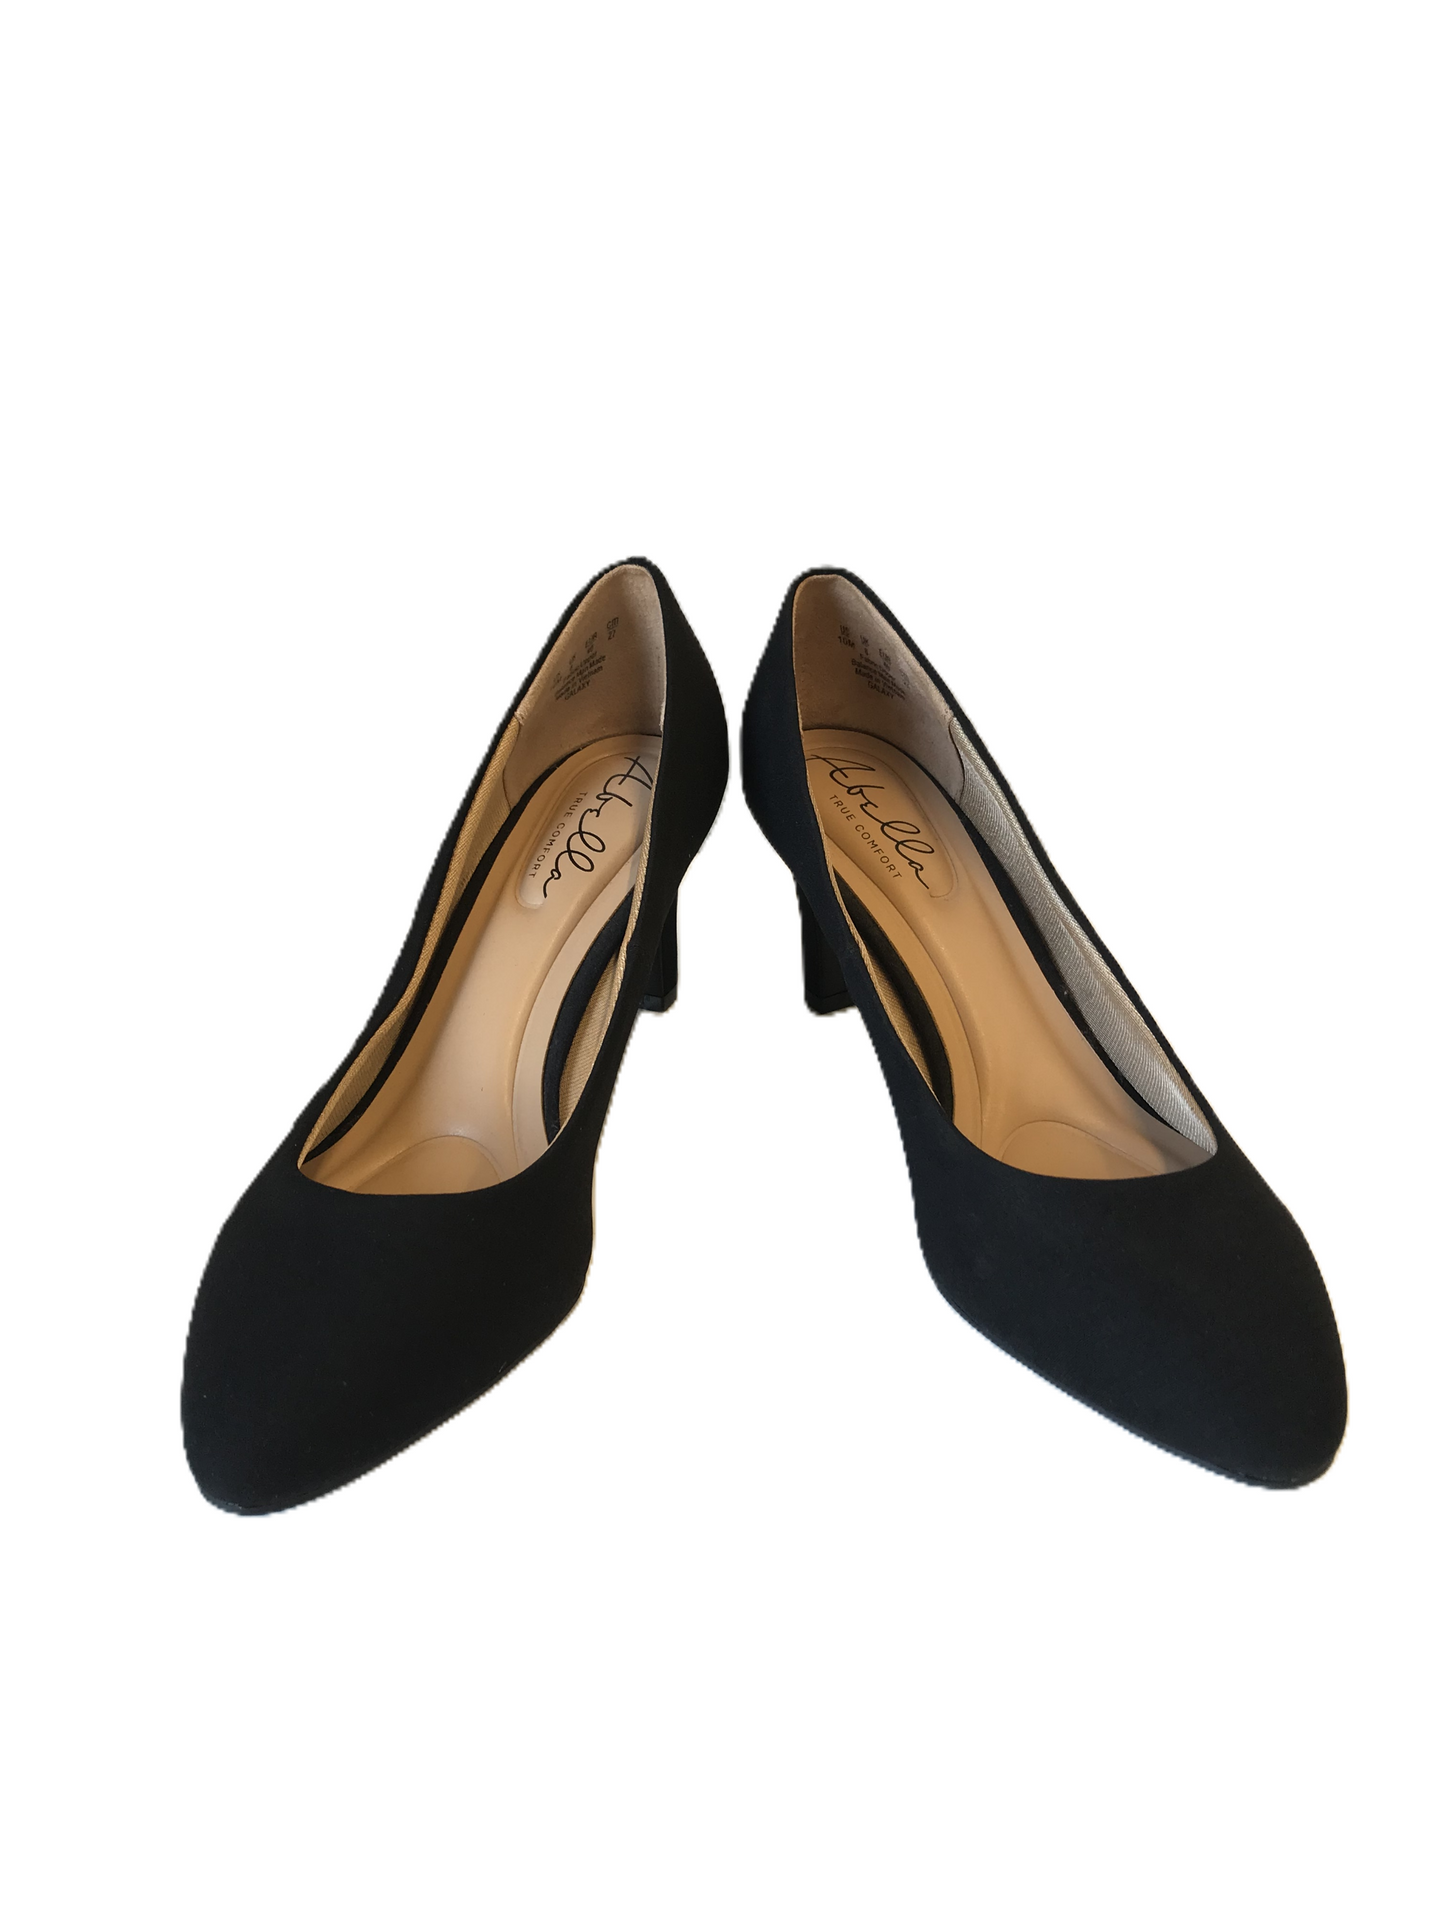 Black Shoes Heels Kitten By Abella Size: 10